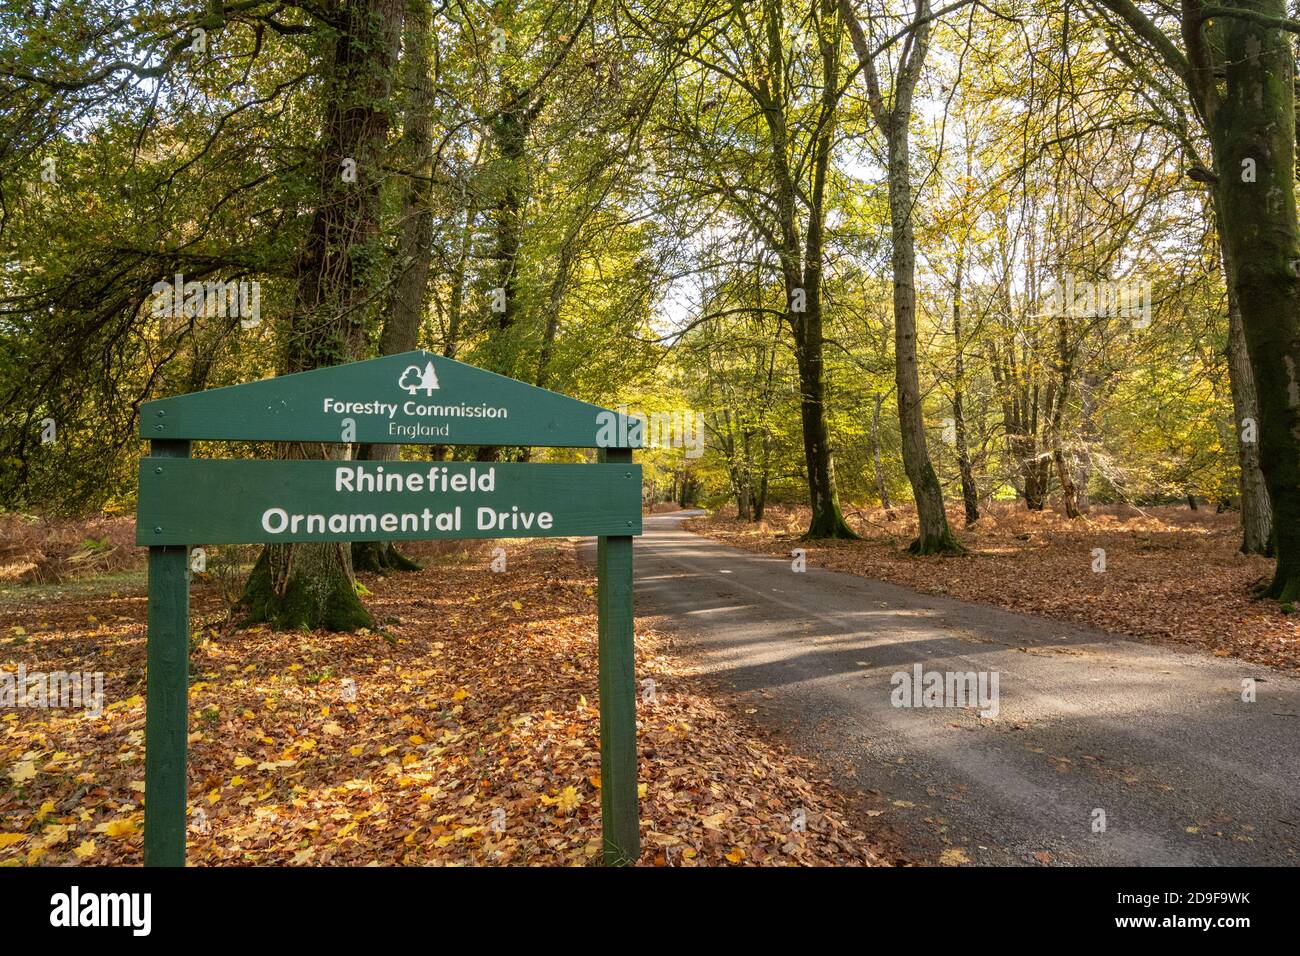 Vue d'automne de Rhinefield ornemental Drive dans le parc national de New Forest, Hampshire, Angleterre, Royaume-Uni Banque D'Images